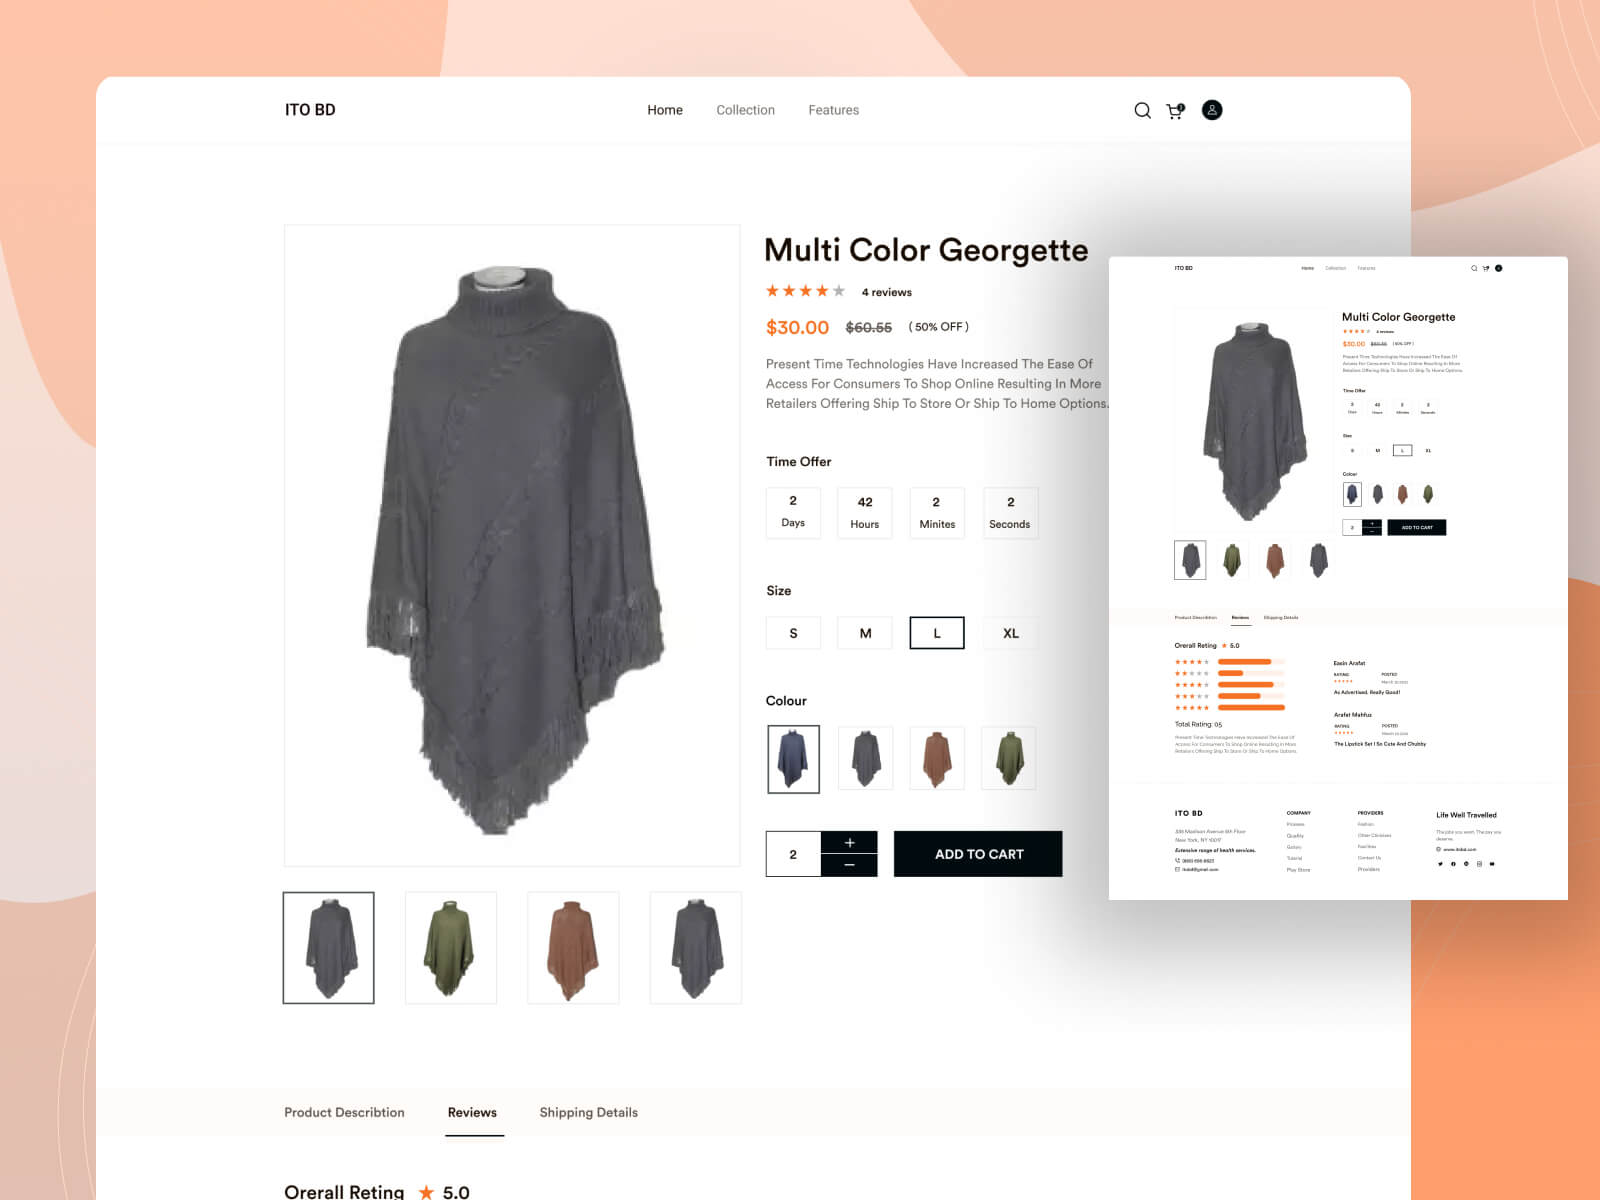 página de produto de um ecommerce, à esquerda mostra a foto de destaque do produto que é uma roupa, e à direita 4 miniaturas com cores diferentes do produto